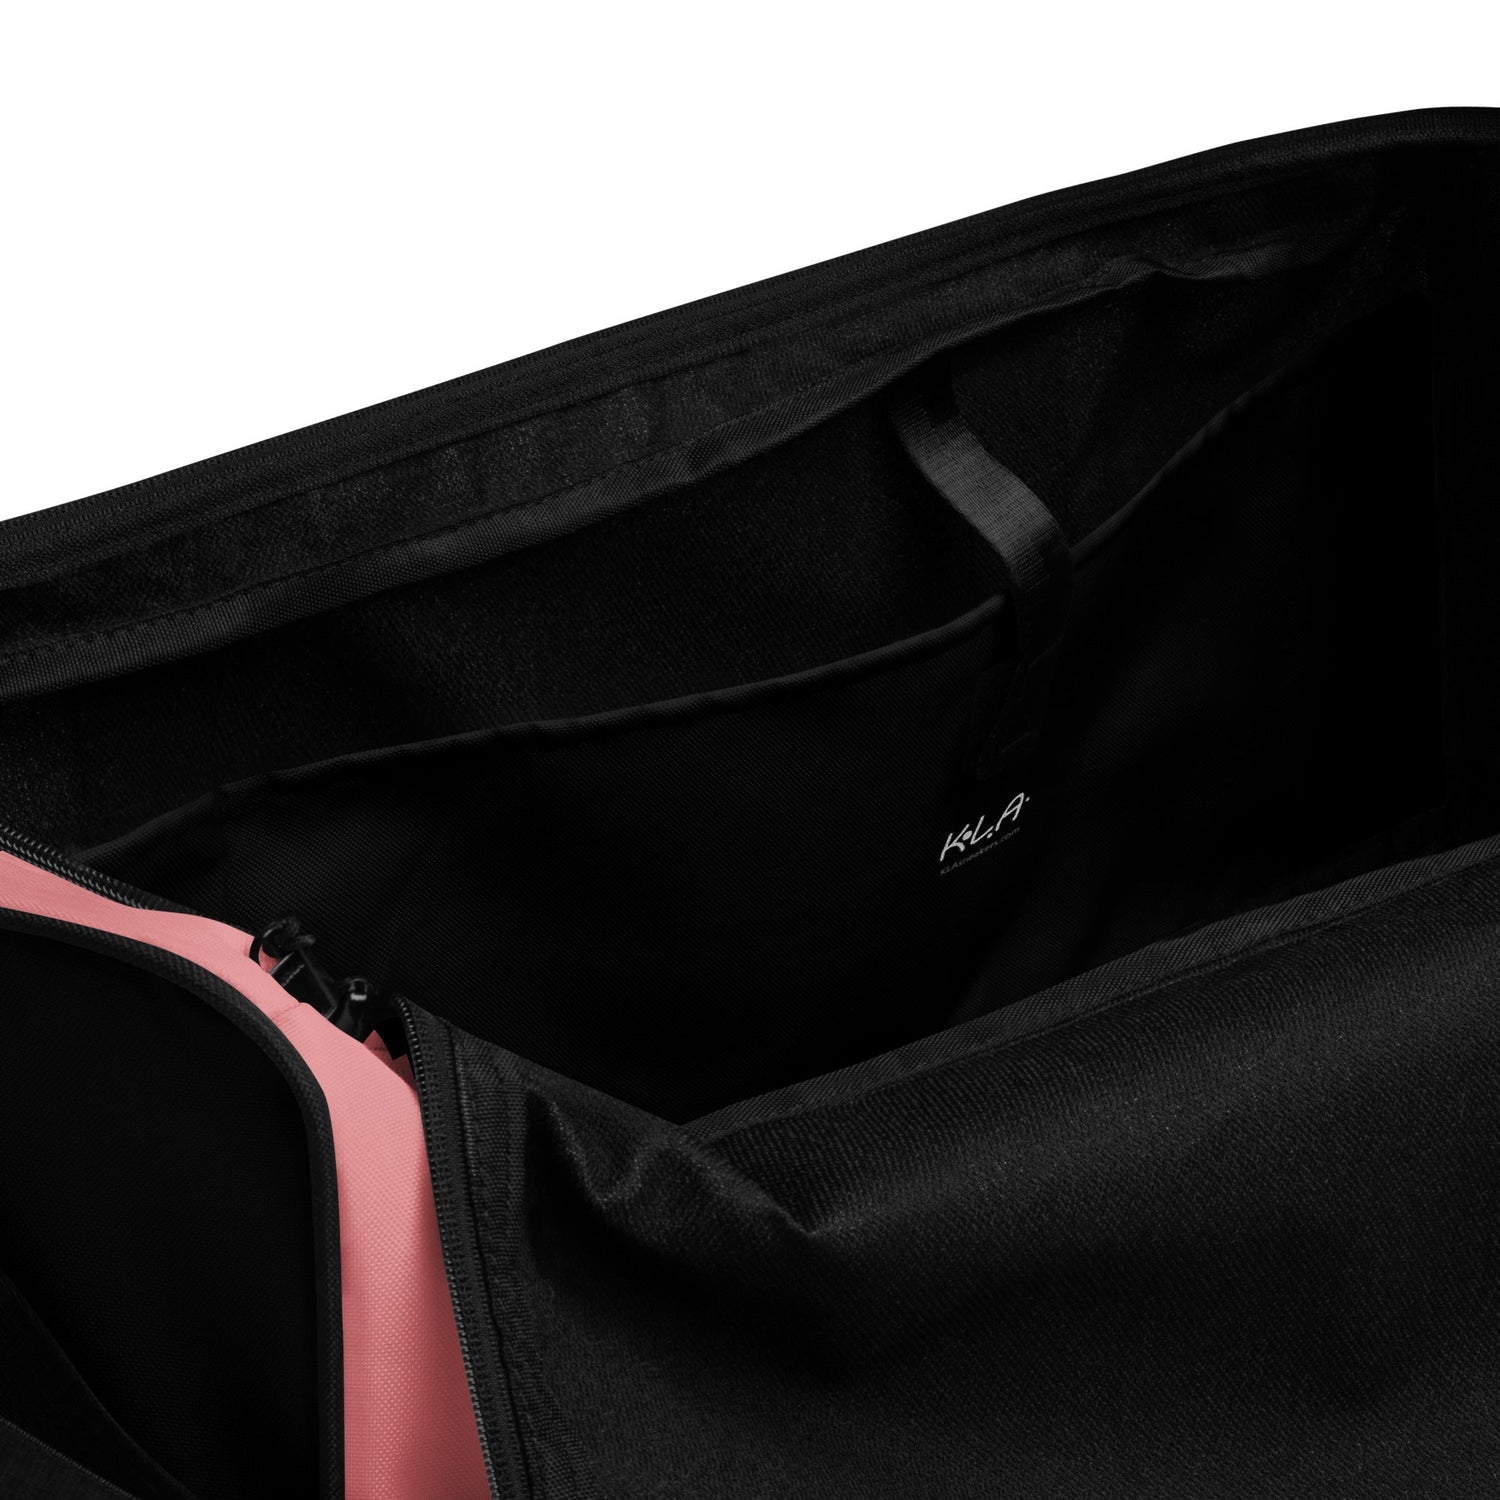 klasneakers KLA duffle bag - Pink